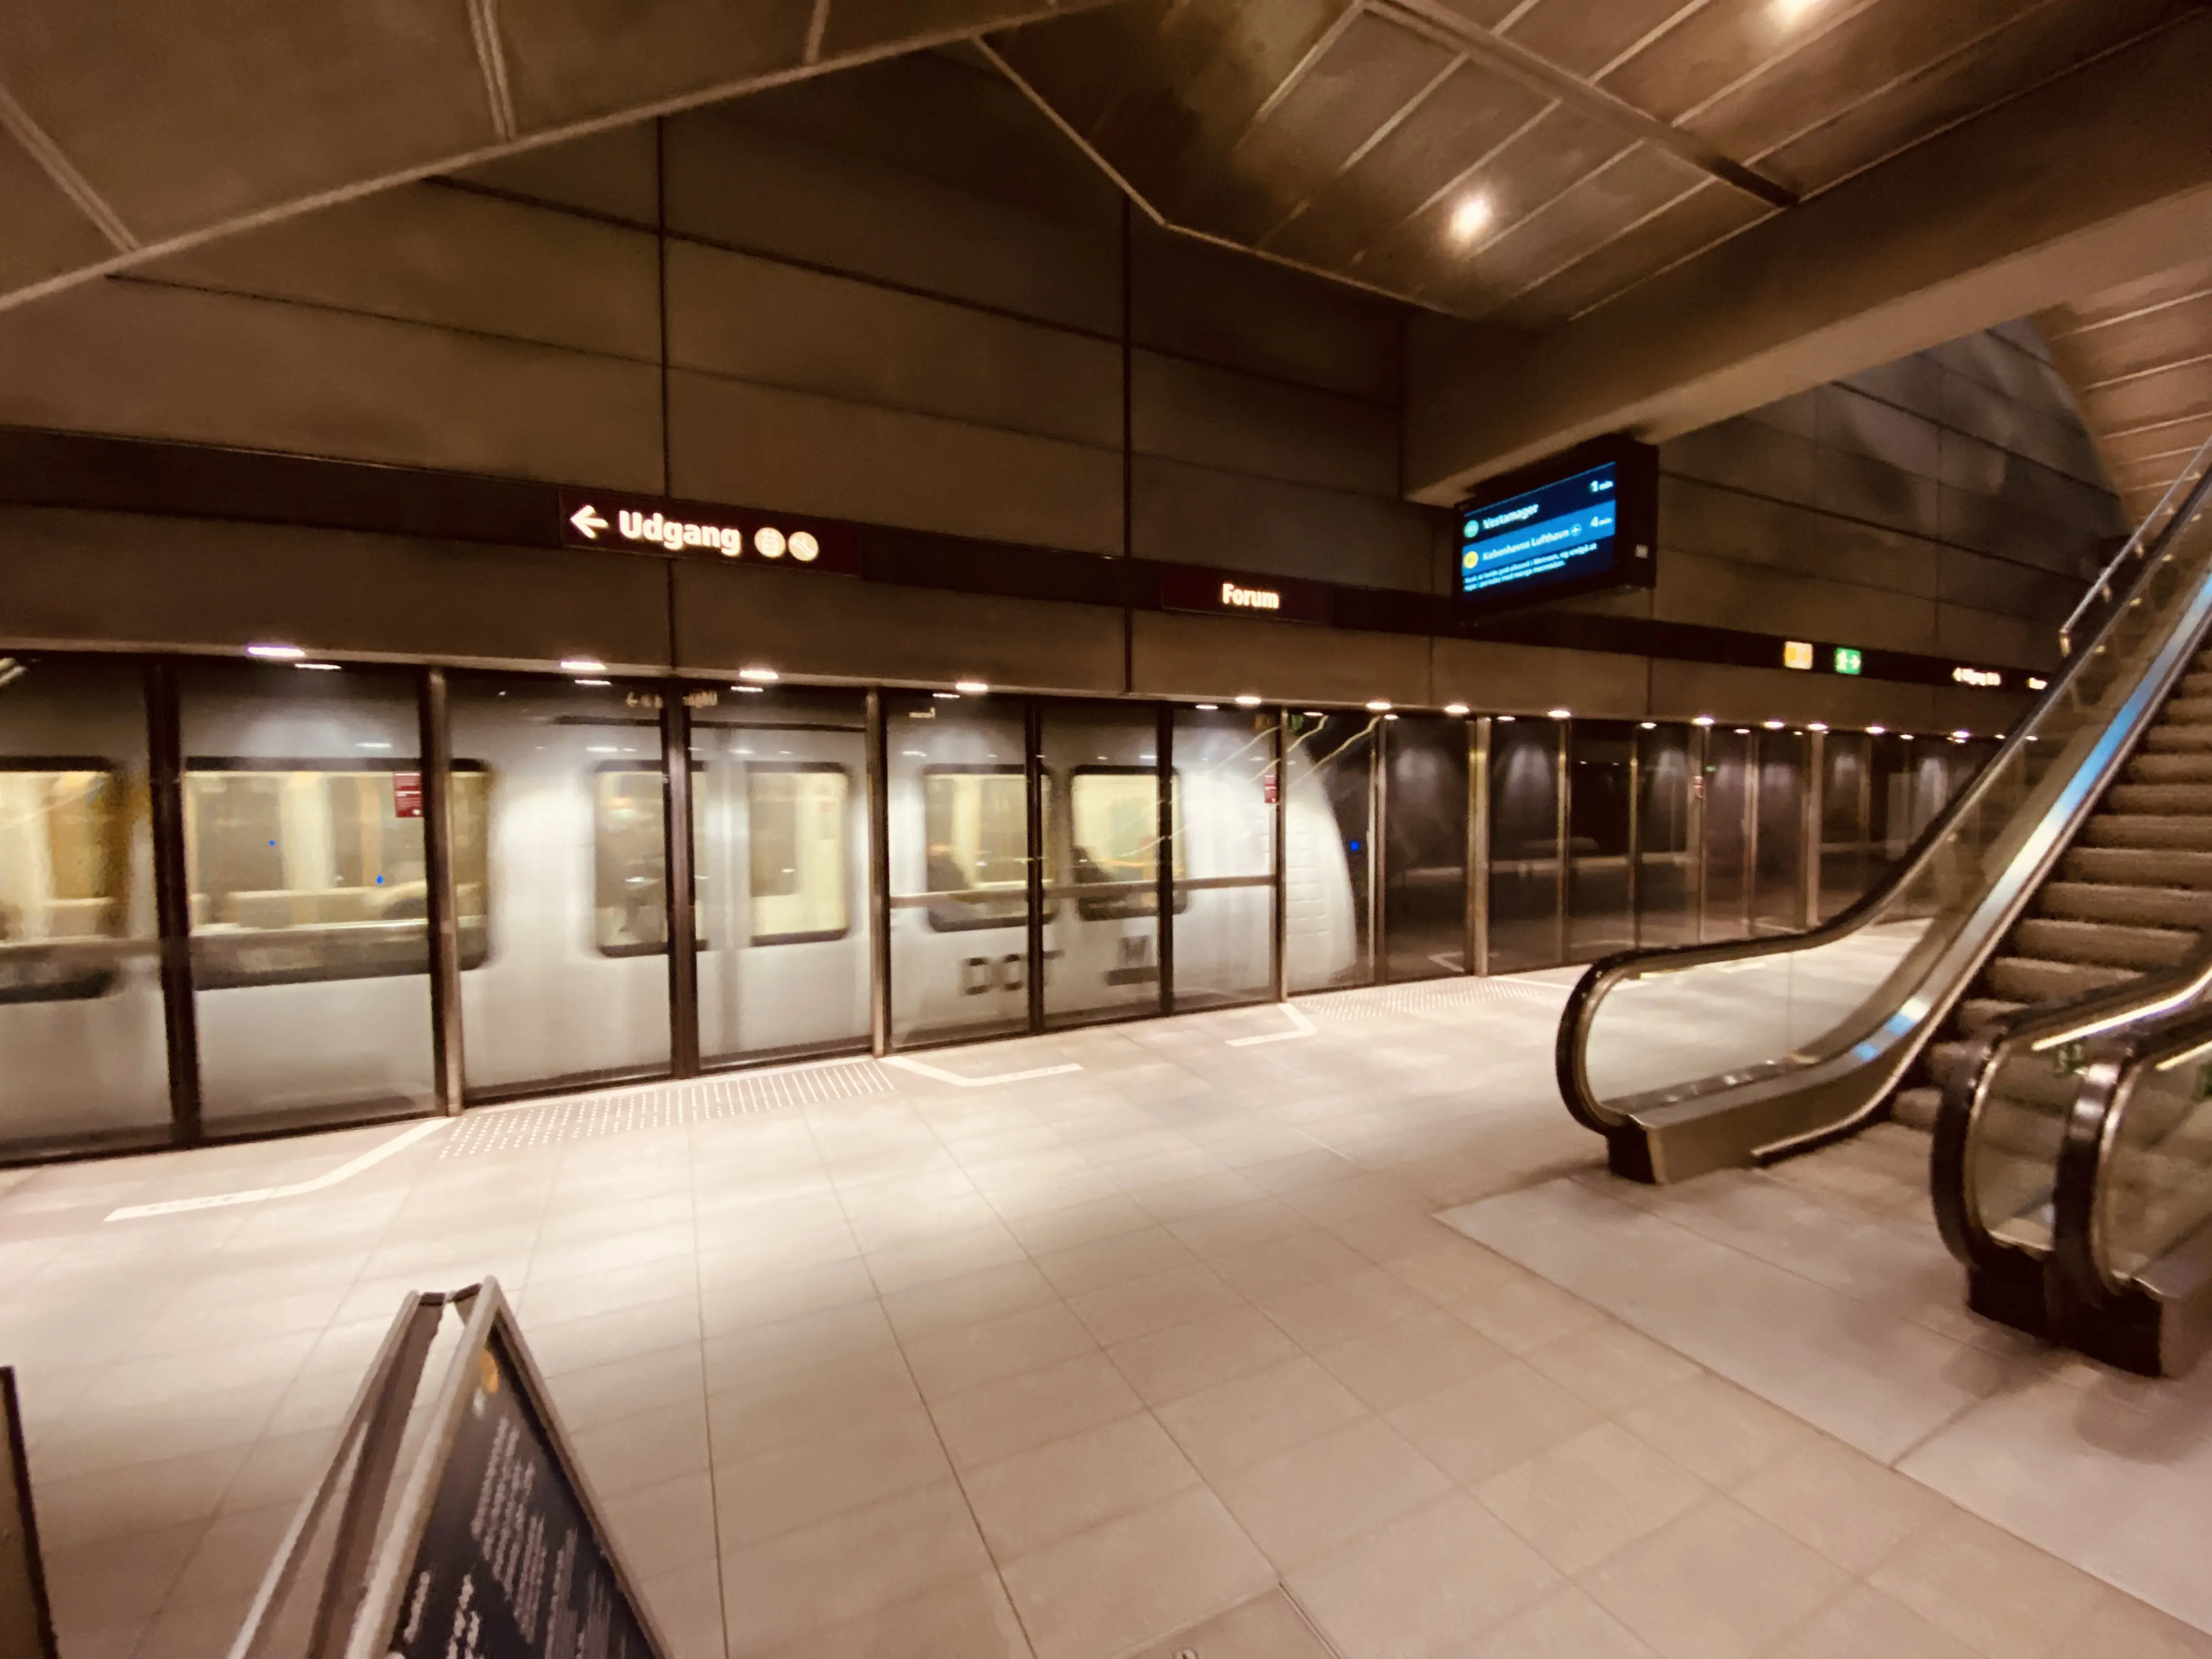 Billede af Forum Metrostation.